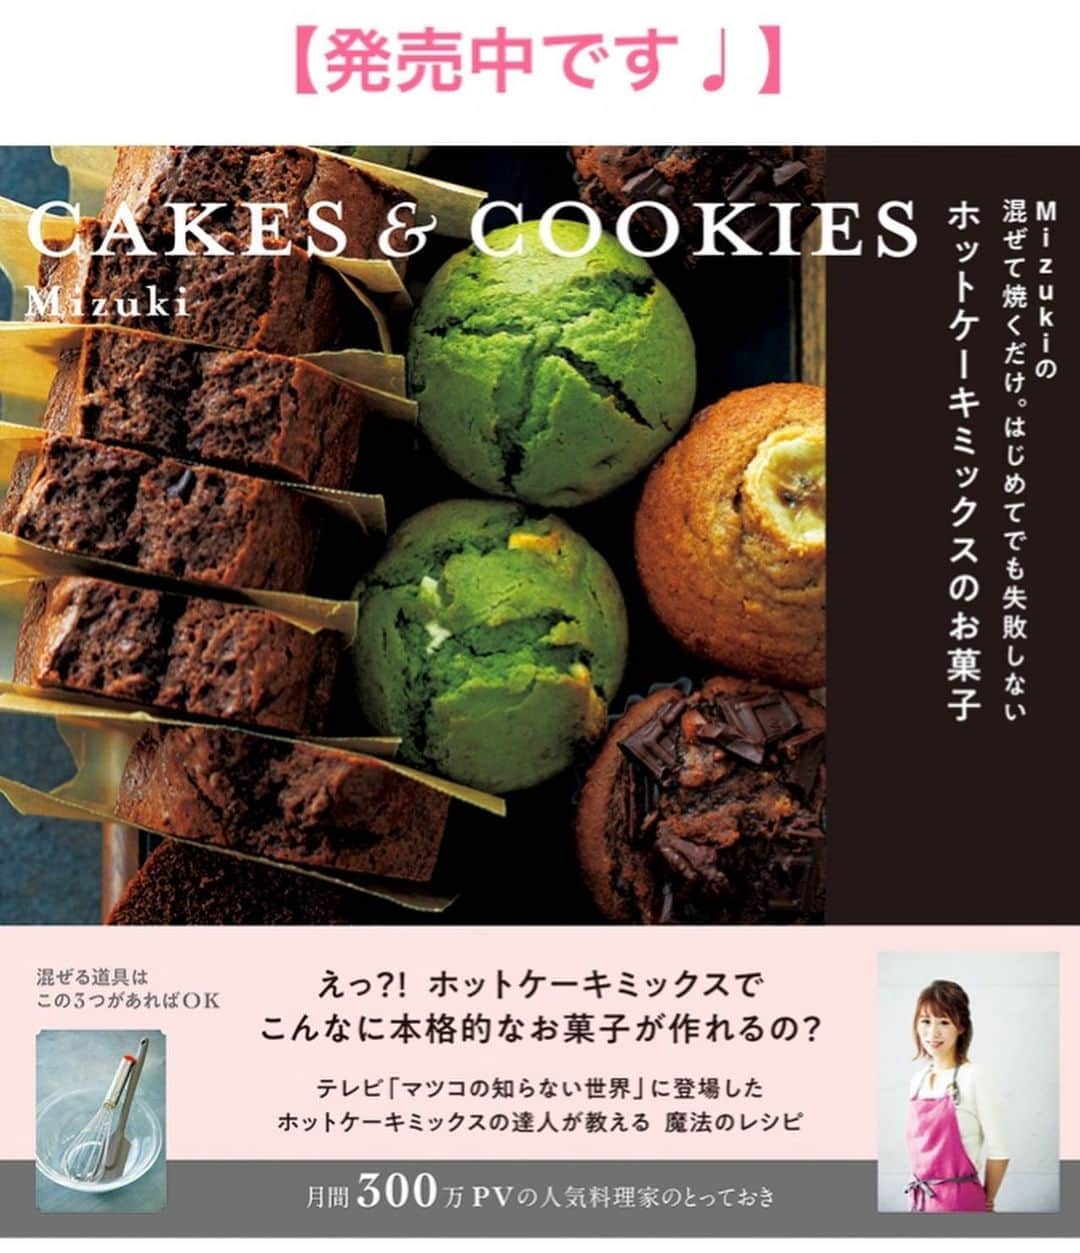 Mizuki【料理ブロガー・簡単レシピ】さんのインスタグラム写真 - (Mizuki【料理ブロガー・簡単レシピ】Instagram)「・﻿ 【レシピ】ーーーーーーーー﻿ ホットケーキミックスで！﻿ ♡チョコバナナスコーン♡﻿ ーーーーーーーーーーーーー﻿ ﻿ ﻿ ﻿ おはようございます(*^^*)﻿ ﻿ 今日はリクエストをいただいた﻿ 卵を使わないお菓子♩﻿ ホットケーキミックスで作る﻿ ［チョコバナナスコーン］を﻿ ご紹介させていただきます♡﻿ バナナをまるっと加えて香りよく﻿ サクフワ食感に仕上げました♫﻿ ﻿ 生地は混ぜるだけ(*´艸`)﻿ 難しい成形もなく﻿ あっという間にできるので﻿ よかったらお試し下さいね(*^^*)﻿ ﻿ ﻿ ﻿ ーーーーーーーーーーーーーーーーーーー﻿ 【9個分】﻿ バナナ...1本(皮付き140g)﻿ ホットケーキミックス...150g﻿ サラダ油...大1﻿ 板チョコ...1枚(50g)﻿ ﻿ (準備)オーブンを180度に予熱する。チョコは適当に割っておく。﻿ 1.ボウルにバナナを入れ、フォークでペースト状に潰す。﻿ 2.ホットケーキミックスとサラダ油を加えてゴムべらで混ぜ、粉っぽさがなくなったらチョコも加えてざっくり混ぜる。﻿ 3.生地を10cm四方の正方形になるよう手でのばし、包丁で縦横3等分に切る。クッキングシートを敷いた天板に間隔を空けて並べ、予熱したオーブンで15分焼く。﻿ ーーーーーーーーーーーーーーーーーーー﻿ ﻿ ﻿ ﻿ 《ポイント》﻿ ♦︎サラダ油の代わりに、太白ごま油やオリーブオイルを使用してもOK♩﻿ ﻿ ﻿ ﻿ ﻿ ﻿ ＿＿＿＿＿＿＿＿＿＿＿＿＿＿＿＿＿﻿ ＿＿＿＿＿＿＿＿＿＿＿＿＿＿＿＿＿﻿ 🎀新刊発売中🎀﻿ 【#ホットケーキミックスのお菓子 】﻿ ﻿ 今回は一冊まるっとホケミスイーツ♩﻿ 普段のおやつから﻿ 特別な日にも使えるレシピを﻿ この一冊に詰め込みました(*^^*)﻿ ホットケーキミックスを使えば﻿ 簡単に本格的なお菓子が作れますよ♡﻿ 春休みのおやつ作りにも﻿ よかったらご活用下さい♫﻿ ﻿ 🔹ハイライトにリンクあります♩🔹﻿ ＿＿＿＿＿＿＿＿＿＿＿＿＿＿＿＿＿﻿ ＿＿＿＿＿＿＿＿＿＿＿＿＿＿＿＿＿﻿ ﻿ ﻿ ﻿ ﻿ 【お知らせ】﻿ ストーリーズでは一日数回﻿ 別レシピをご紹介しております(*^^*)﻿ ＊コメントは最新の投稿にお願い致します！﻿ ﻿ ﻿ ﻿ ﻿ #ブログ更新しました﻿ ブログはプロフ画面のリンクよりご覧下さい↓﻿ (@mizuki_31cafe )﻿ 【Mizuki公式ラインブログ】﻿ https://lineblog.me/mizuki_official/﻿ ﻿ ﻿ ﻿ ﻿ #ホットケーキミックス#スコーン#バナナ#チョコ#卵不使用#お菓子#おやつ﻿ #Mizuki#簡単レシピ#時短レシピ#節約レシピ#料理#レシピ#フーディーテーブル#おうちごはん#おうちカフェ#デリスタグラマー#料理好きな人と繋がりたい#料理ブロガー#おうちごはんlover#マカロニメイト#ブログ﻿ #foodpic#follow#cooking#recipe#lin_stagrammer#チョコバナナスコーンm」3月8日 8時56分 - mizuki_31cafe